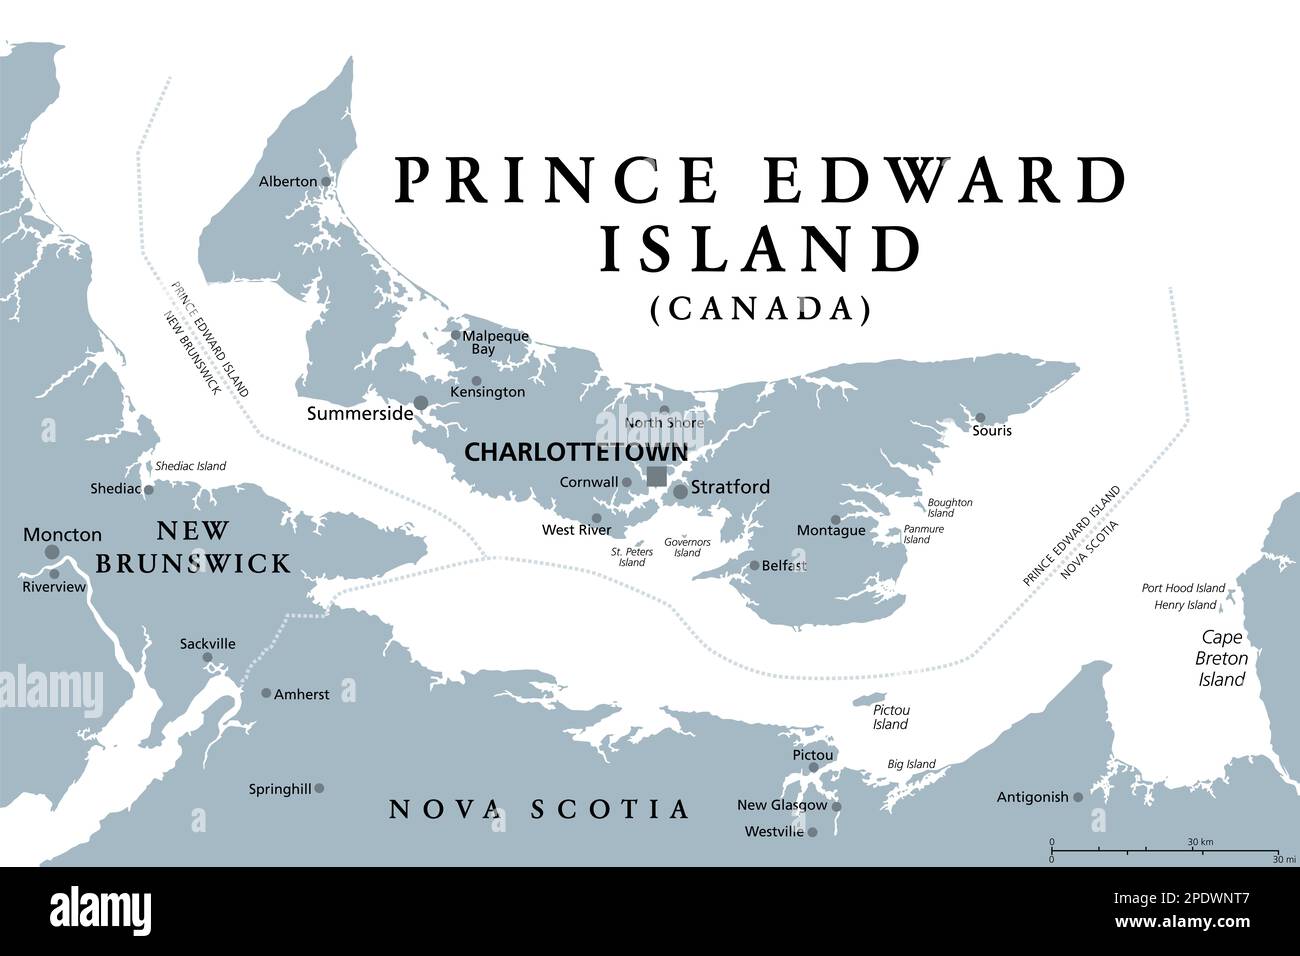 Isola del Principe Edoardo, provincia marittima e atlantica del Canada, mappa politica grigia. Conosciuta come l'isola, nel Golfo di San Lorenzo. Foto Stock